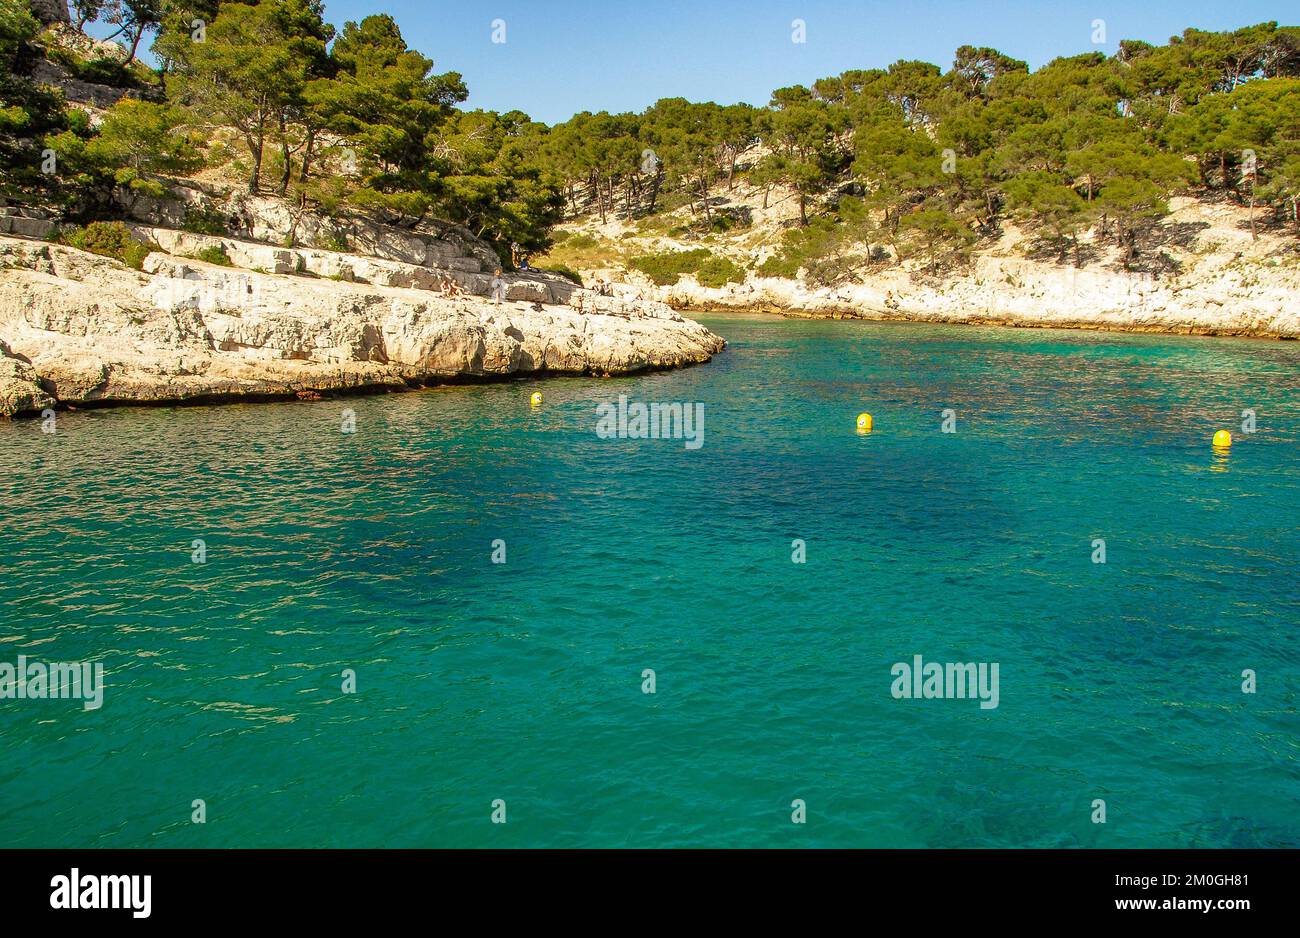 Les criques du Parc National des Calanques sur la rive méditerranéenne de la Provence sont des lieux de baignade populaires Banque D'Images